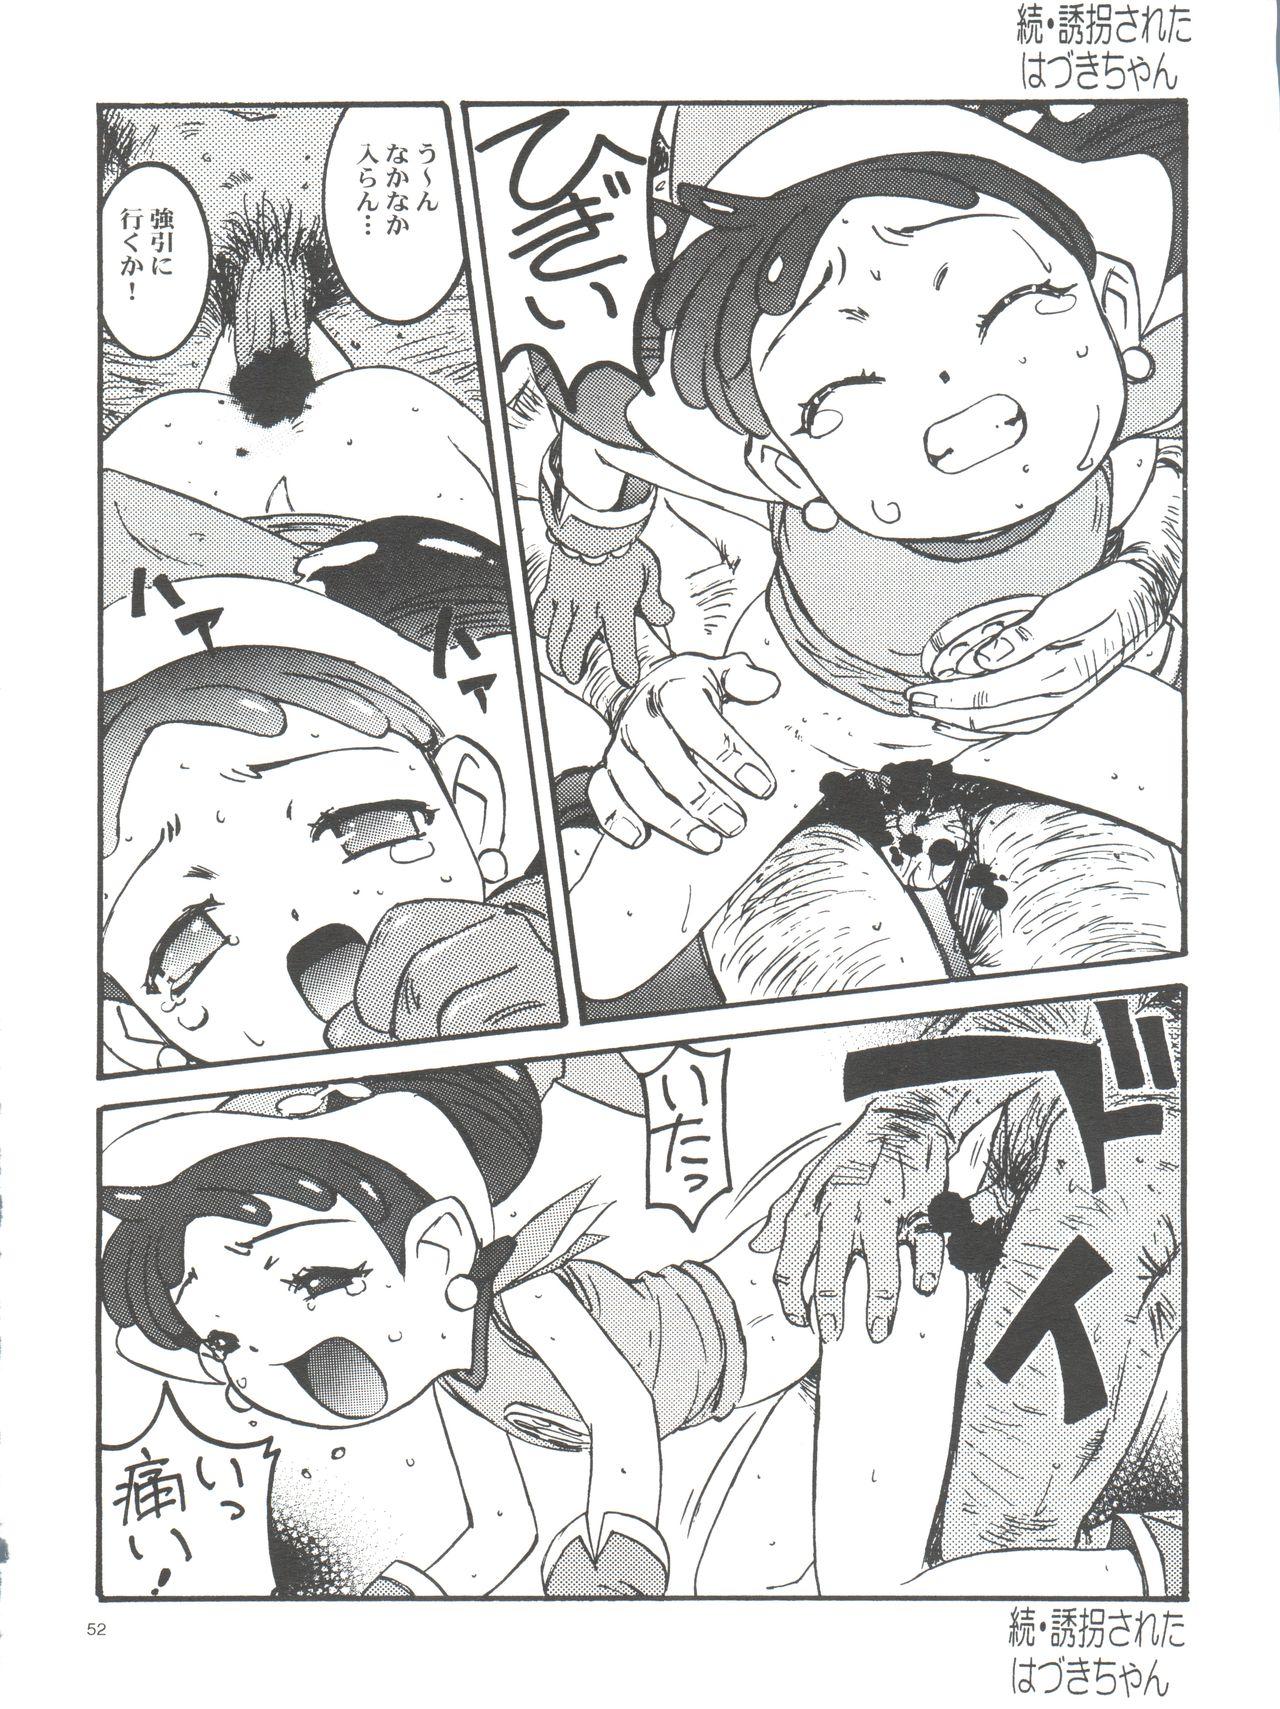 Wanpaku Anime Daihyakka Nanno Koto Jisensyuu Vol. 1 53